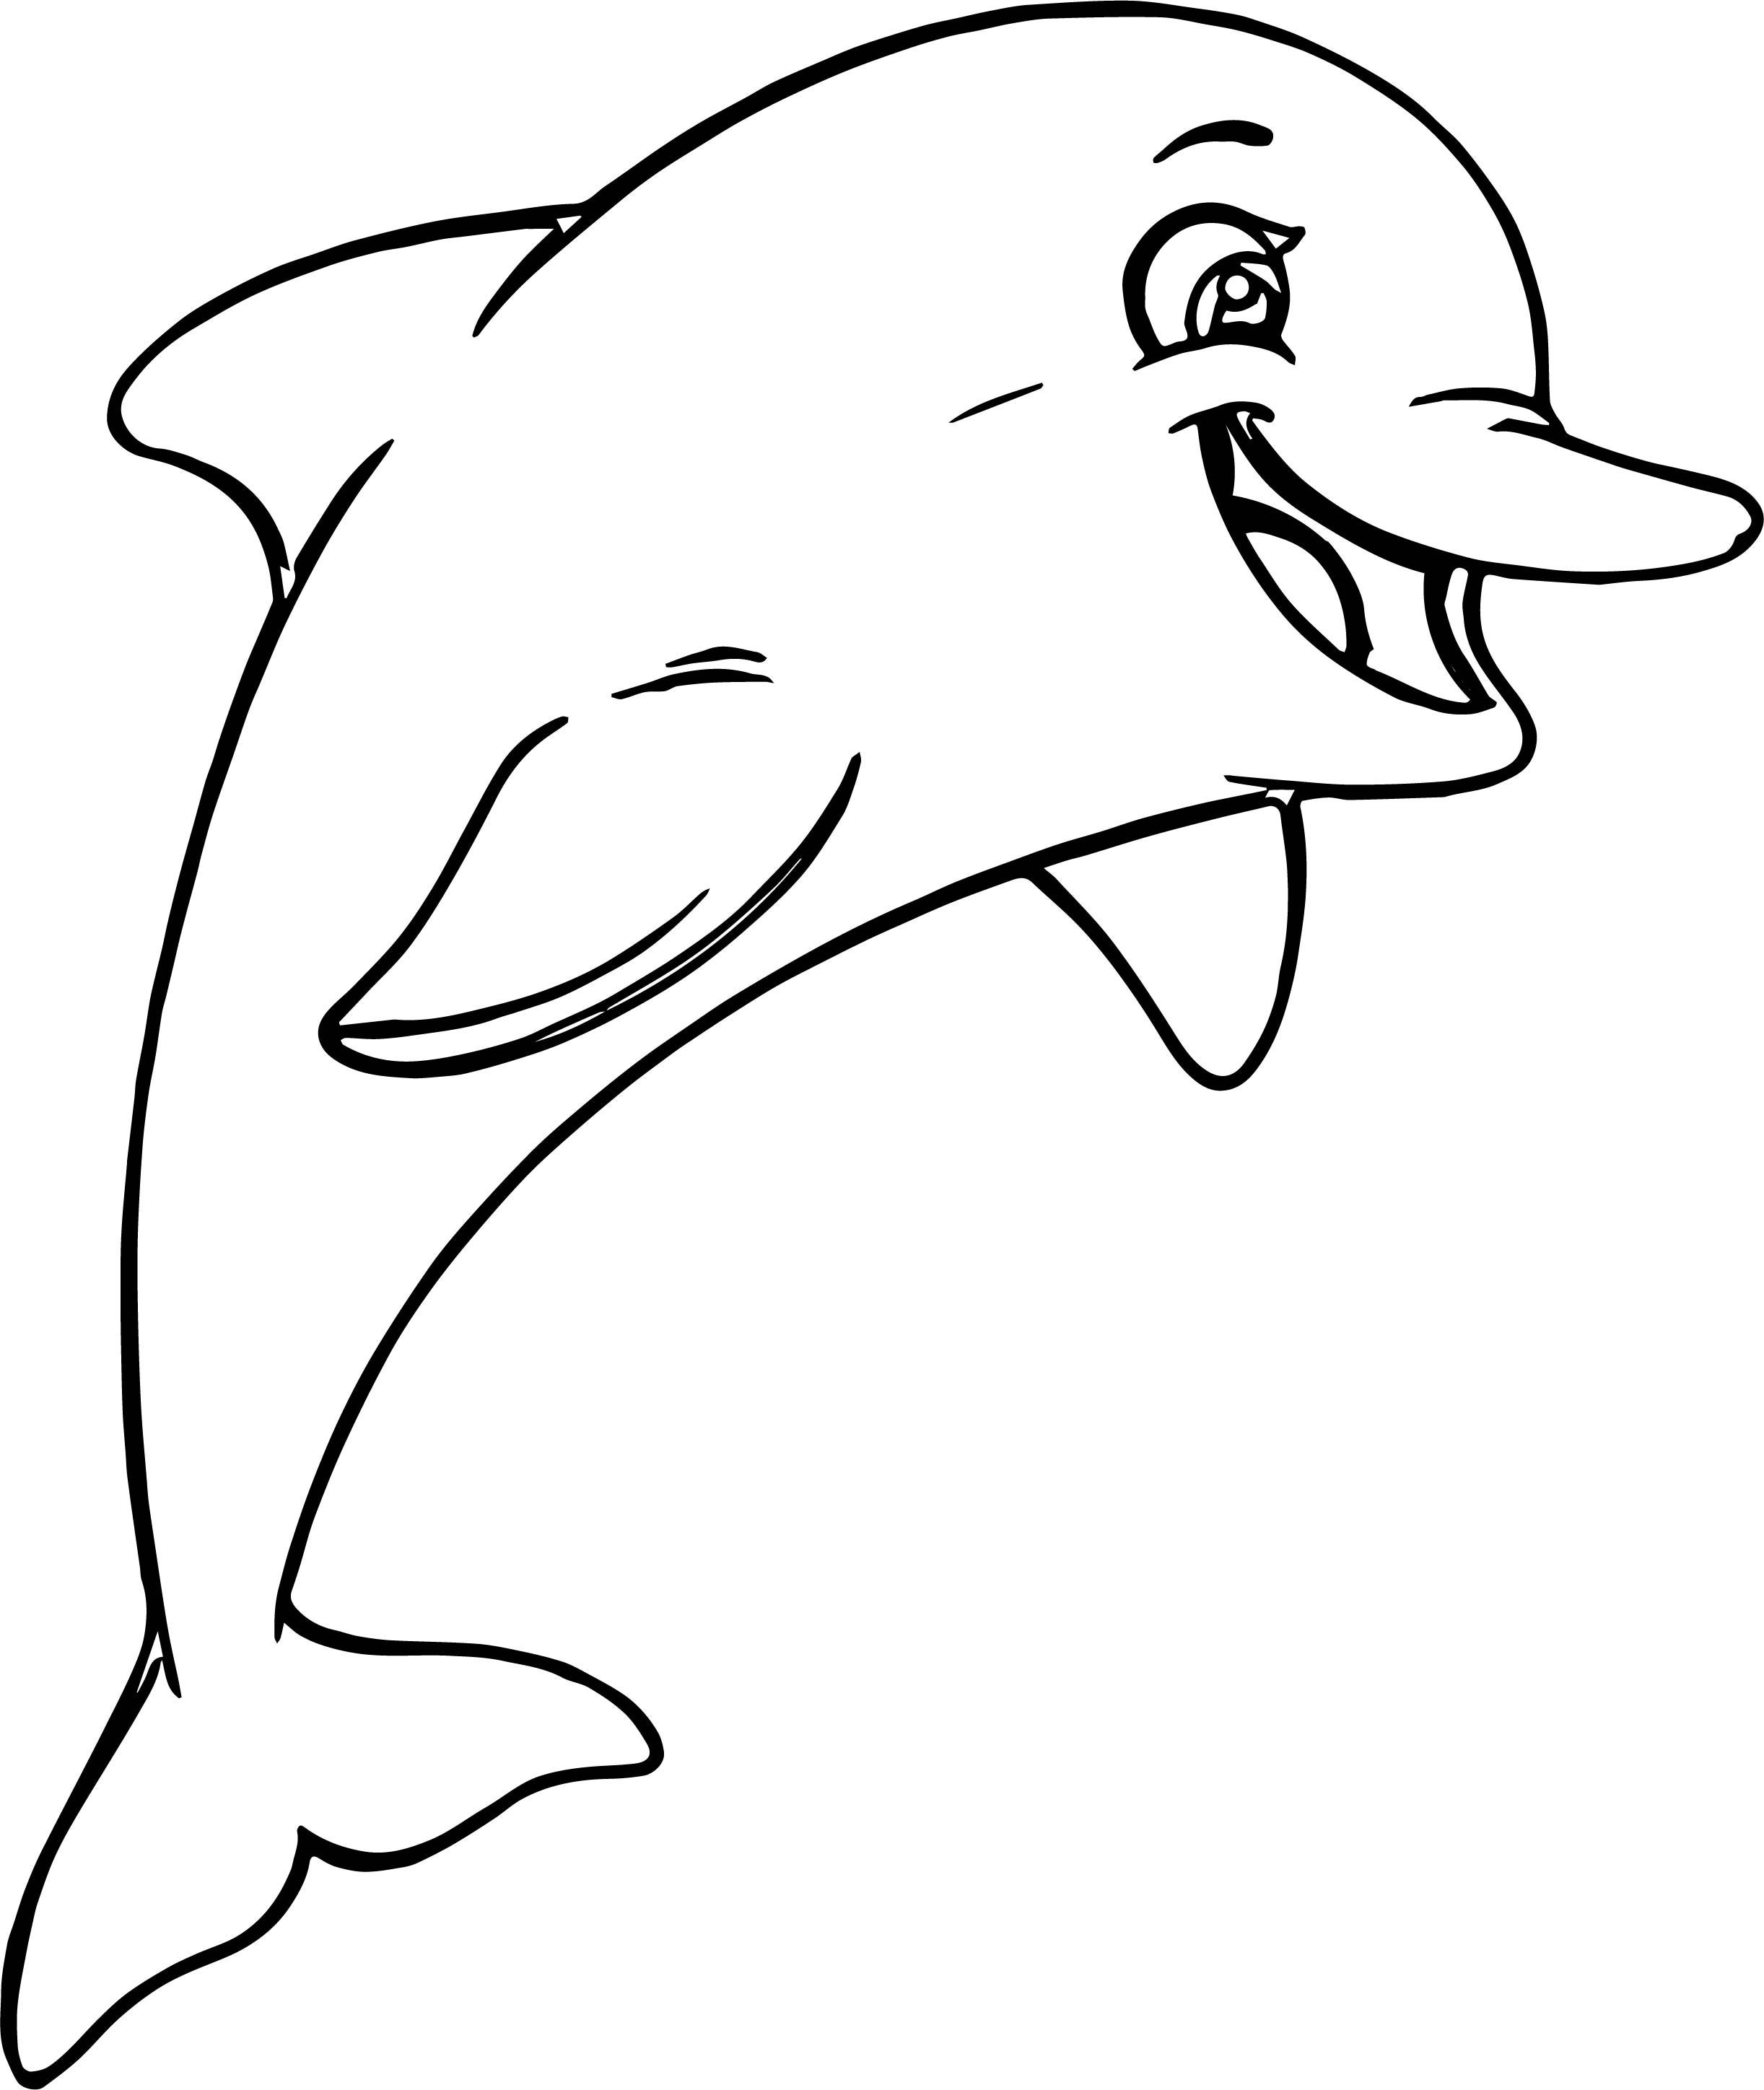 Раскрашивать дельфины. Беломордый Дельфин раскраска. Дельфин раскраска для детей. Дельфины картинки раскраски. Дельфинчик раскраска для детей.